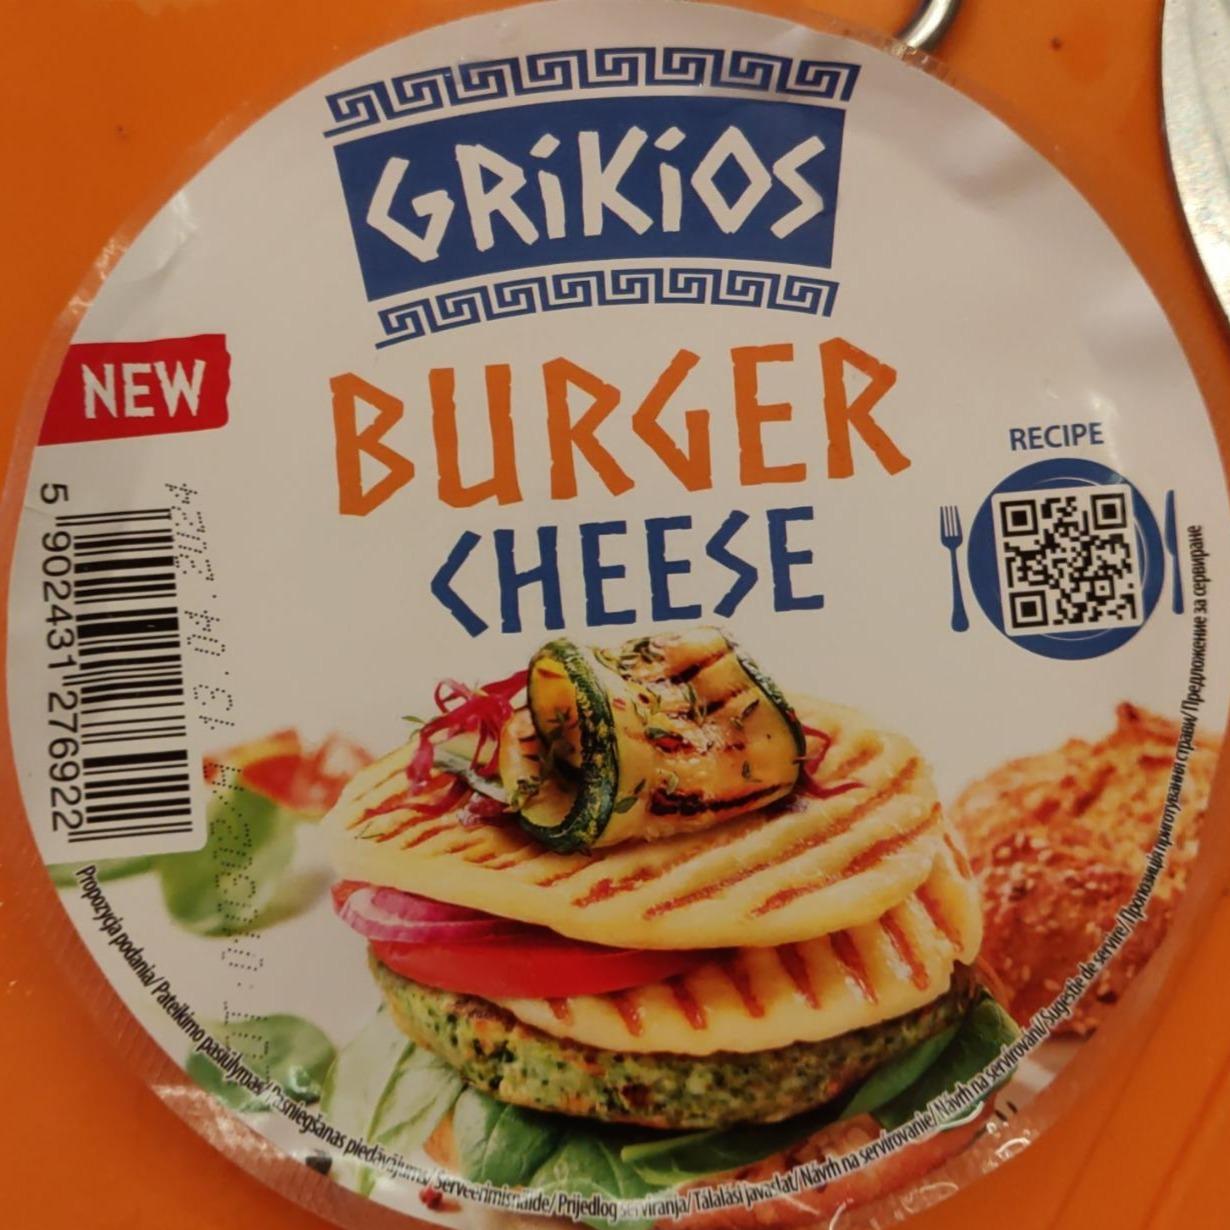 Фото - Burger Cheese Grikios